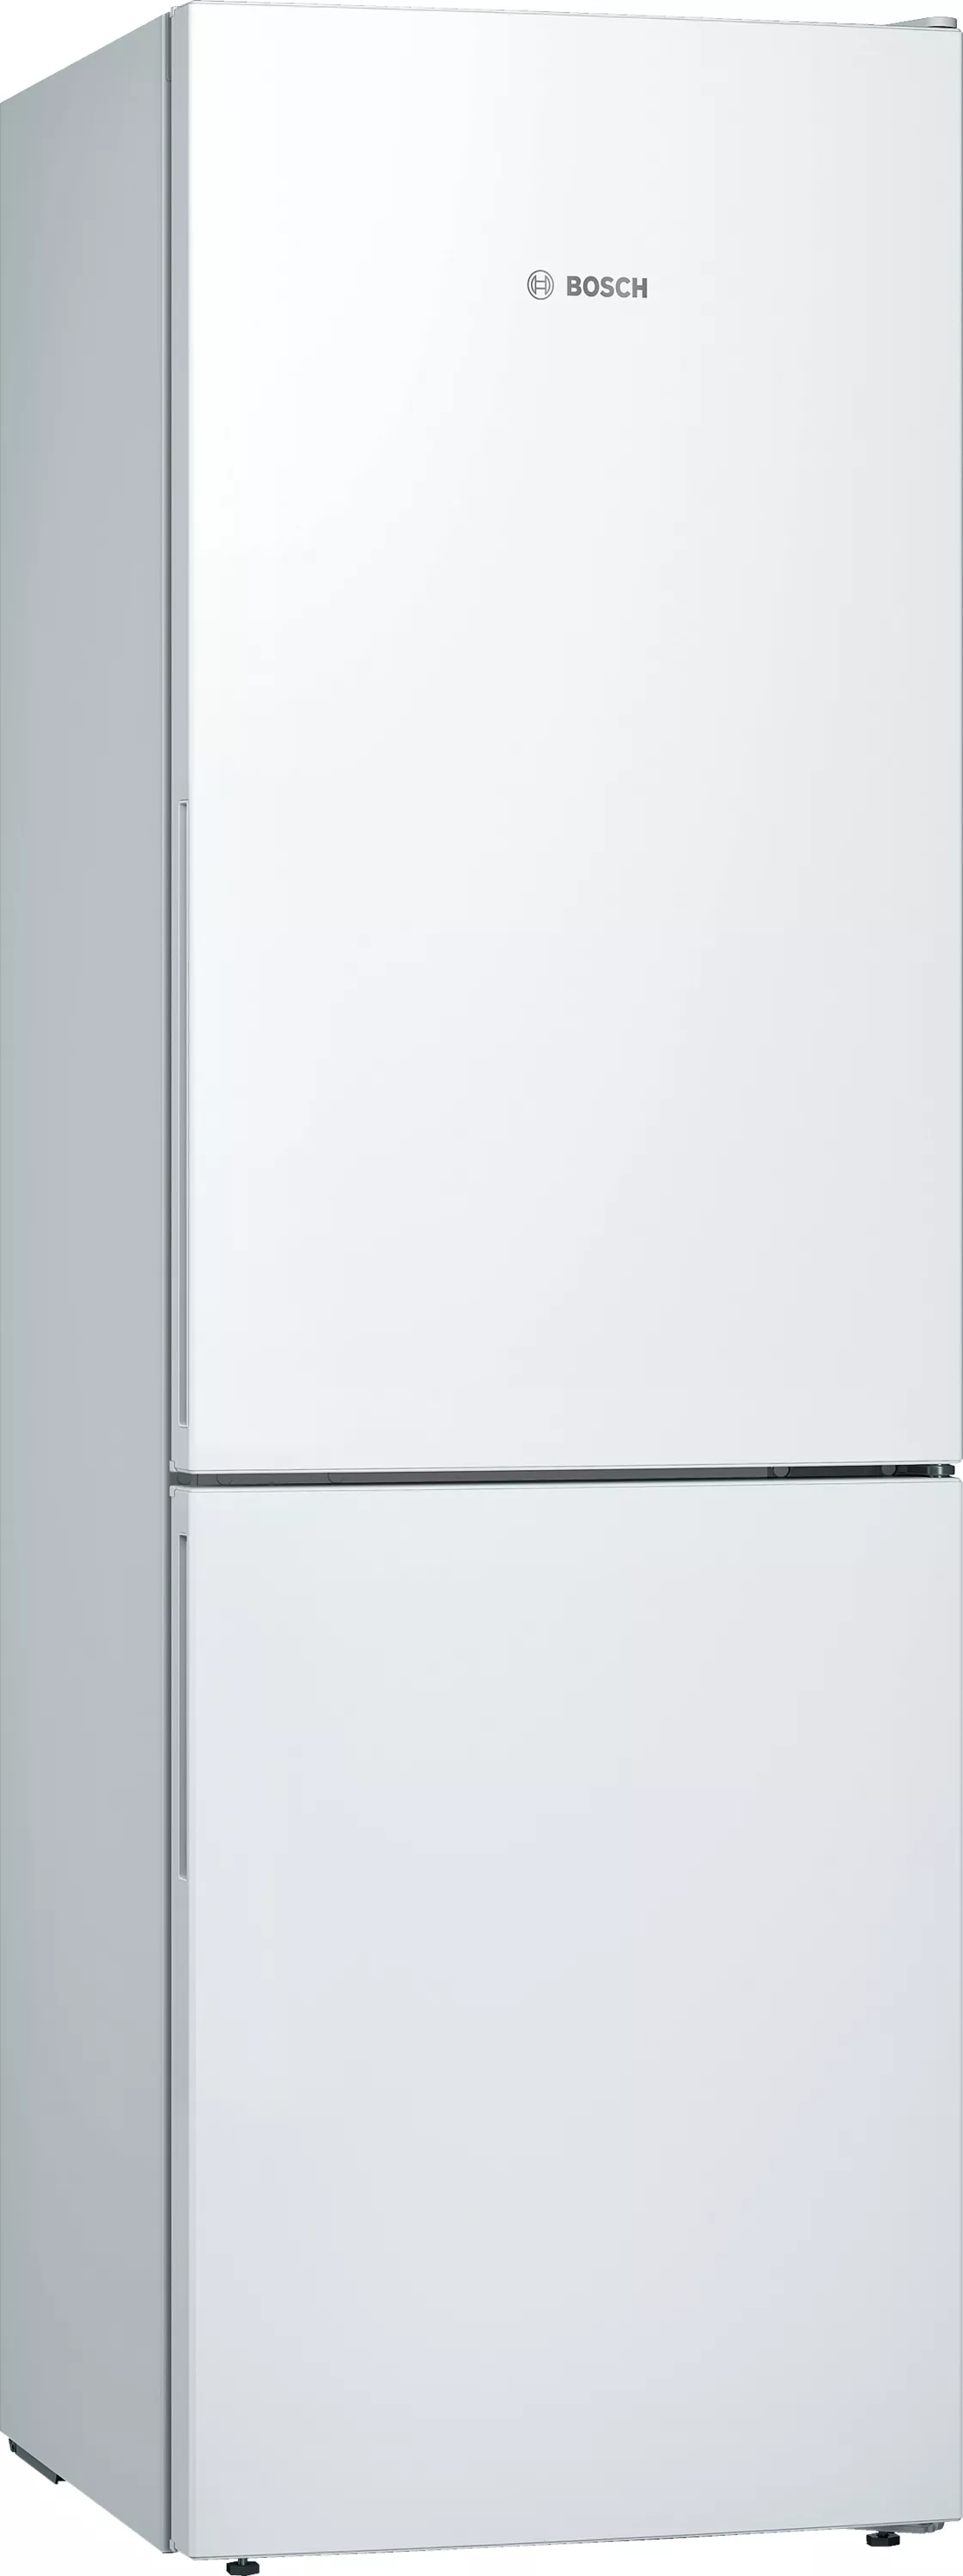 Bosch Serie 6, Freistehende Kühl-Gefrier-Kombination KGE36AWCA , 186 x 60 cm, Weiß